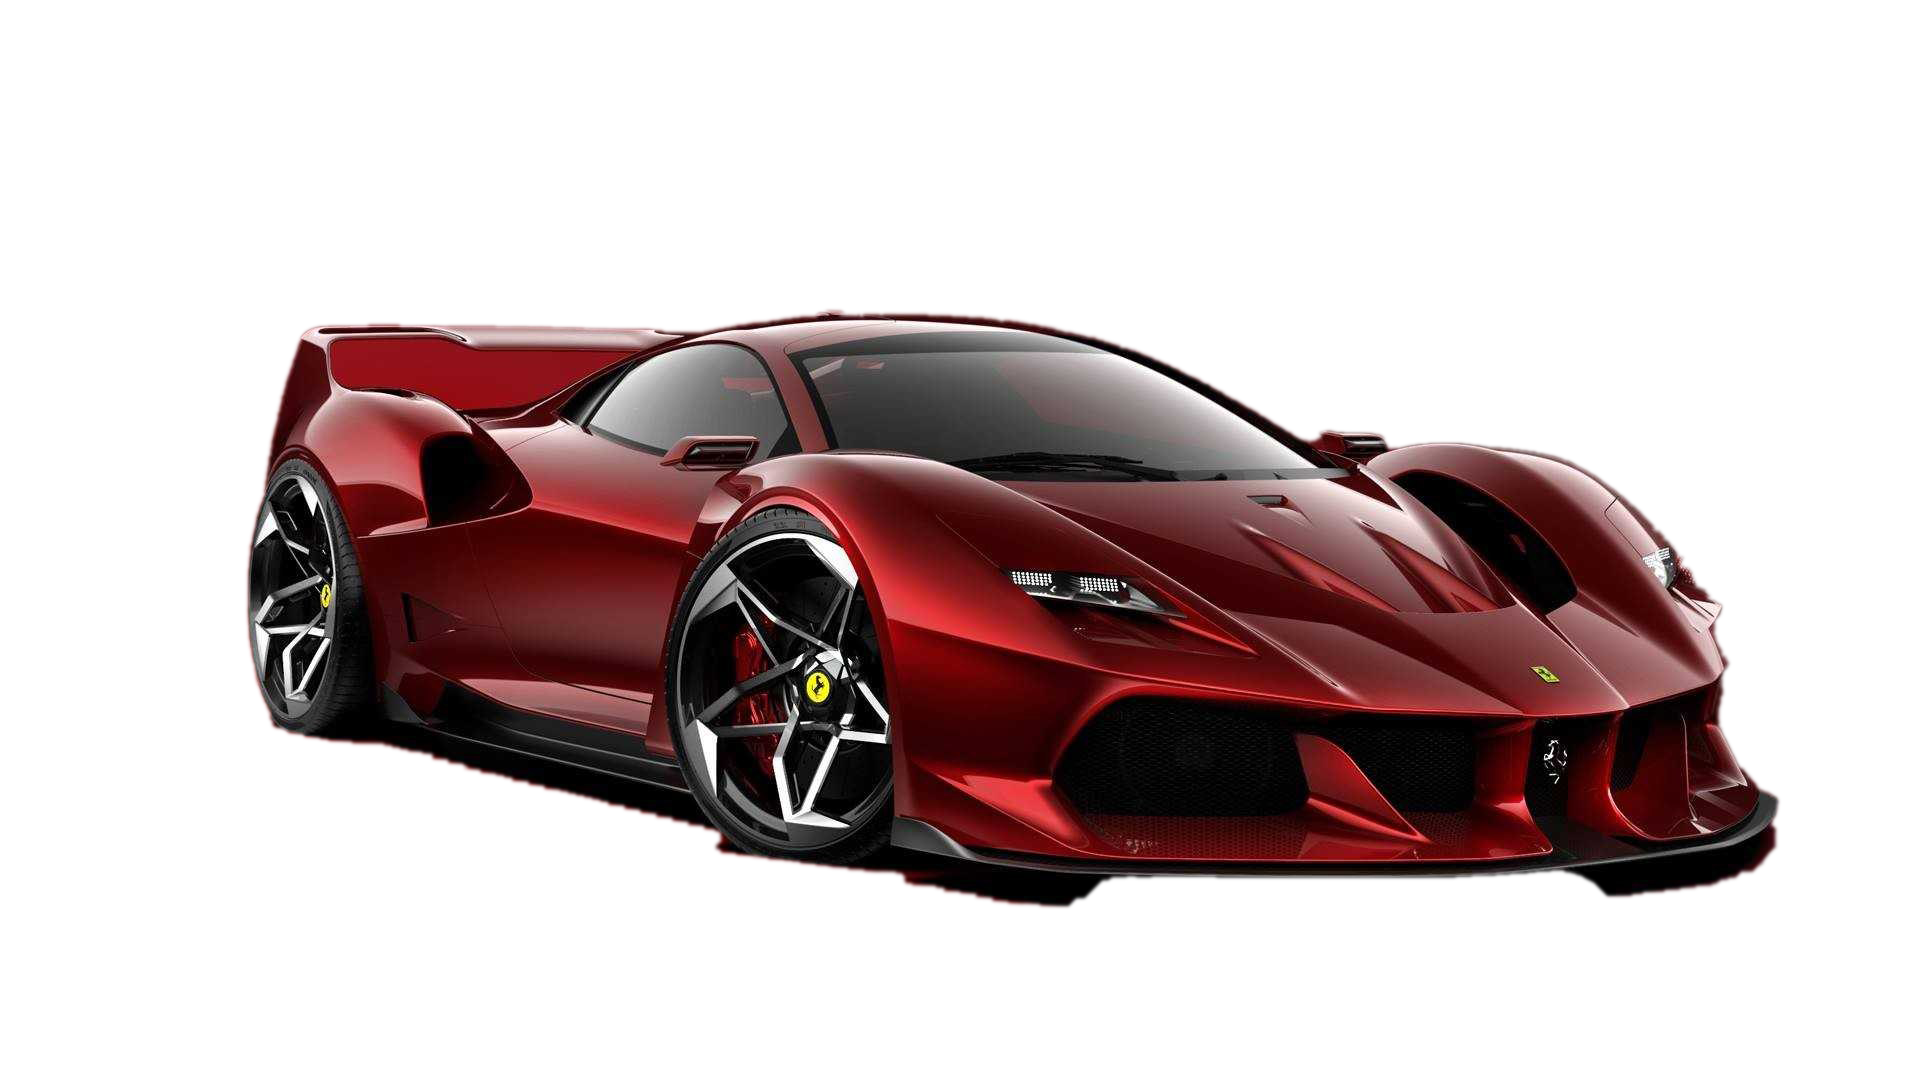 Ferrari Фон PNG Image